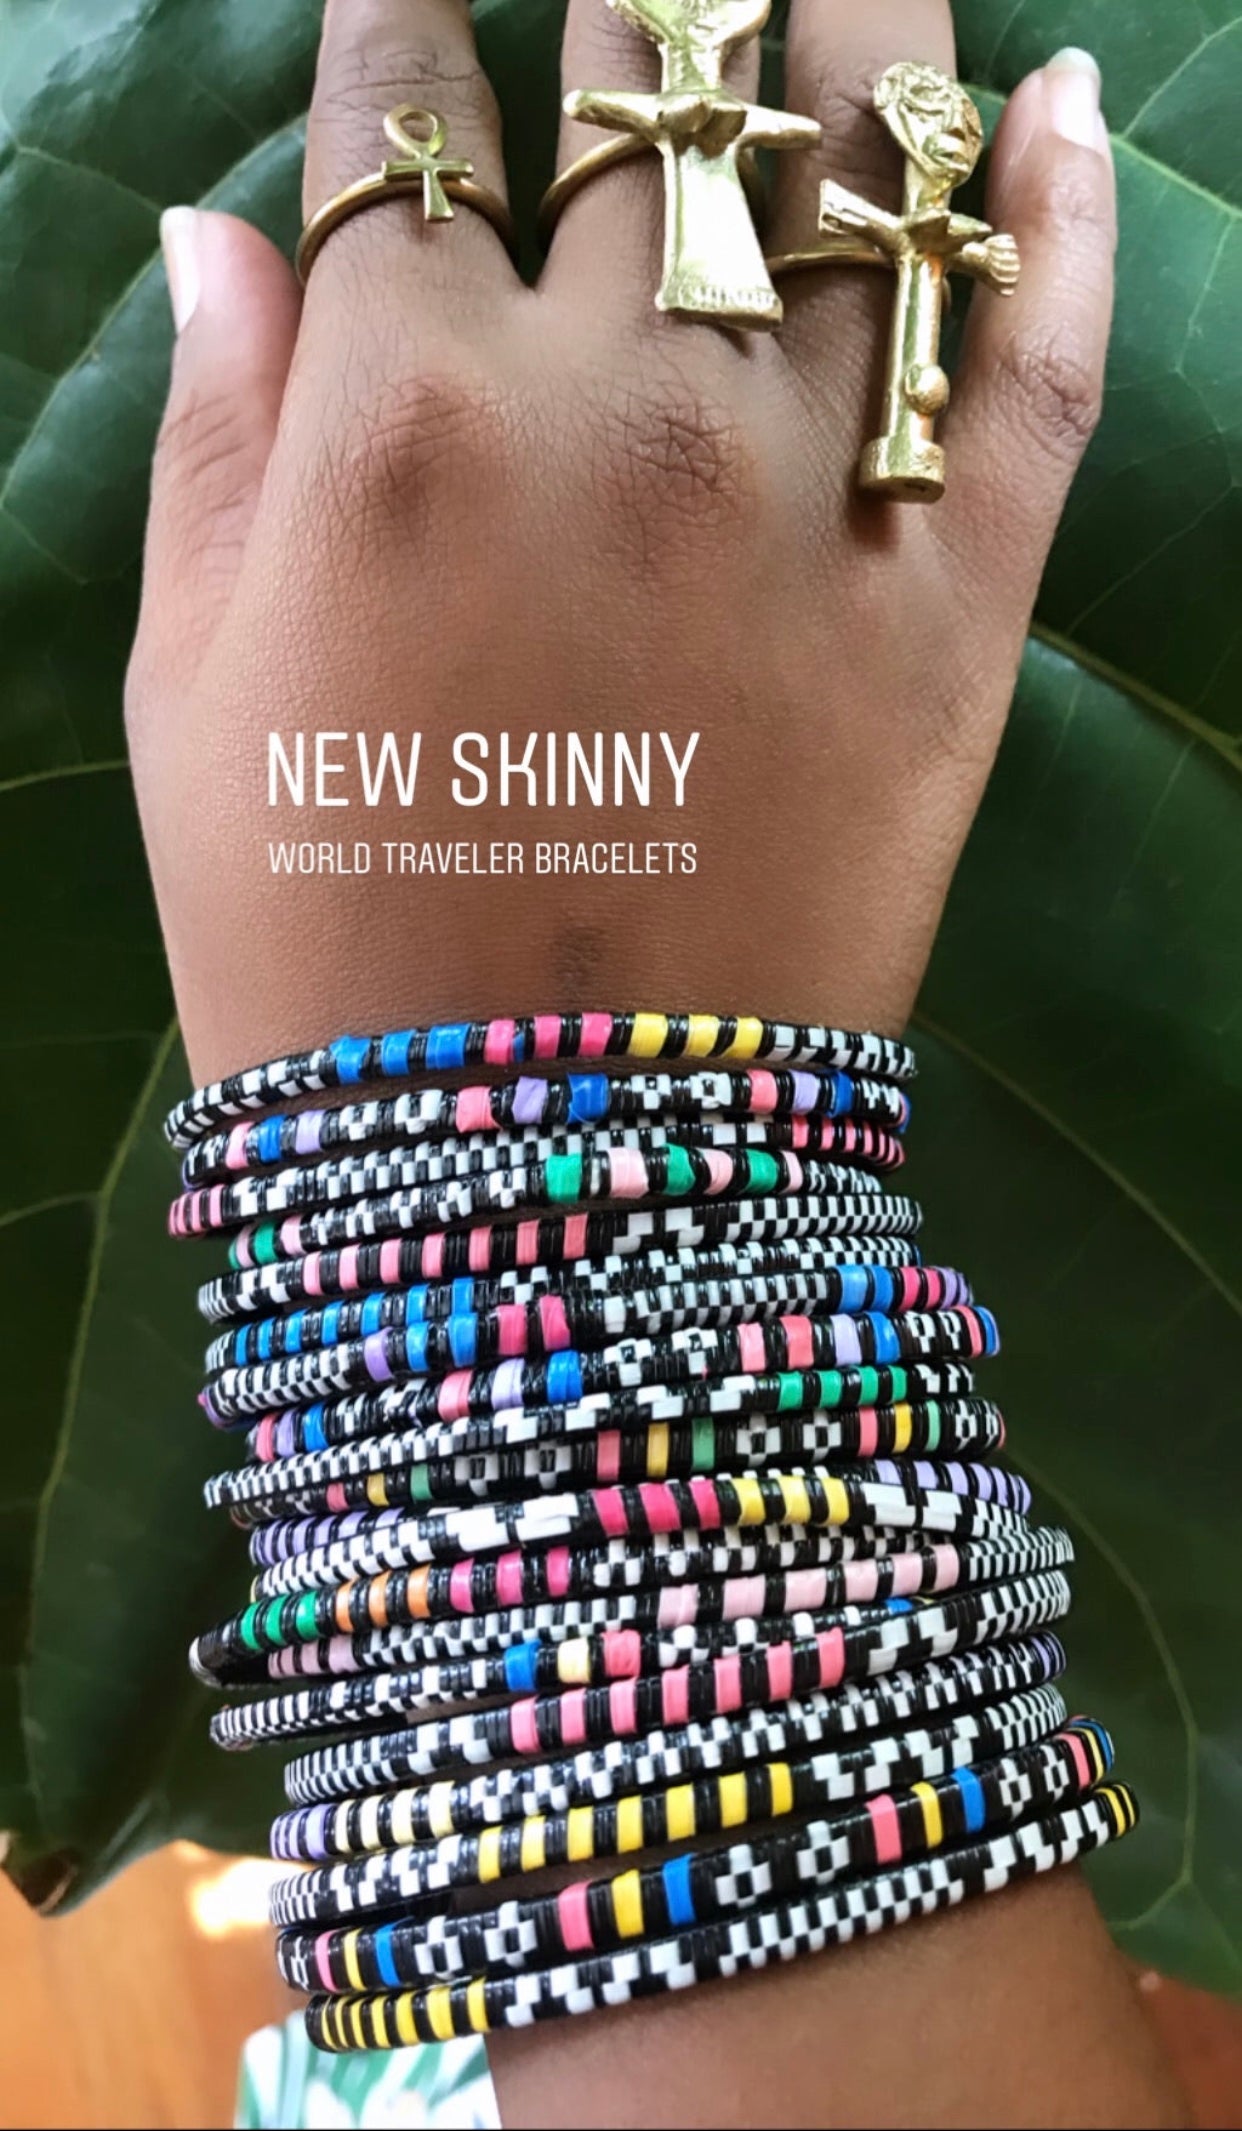 World Traveler Bracelets